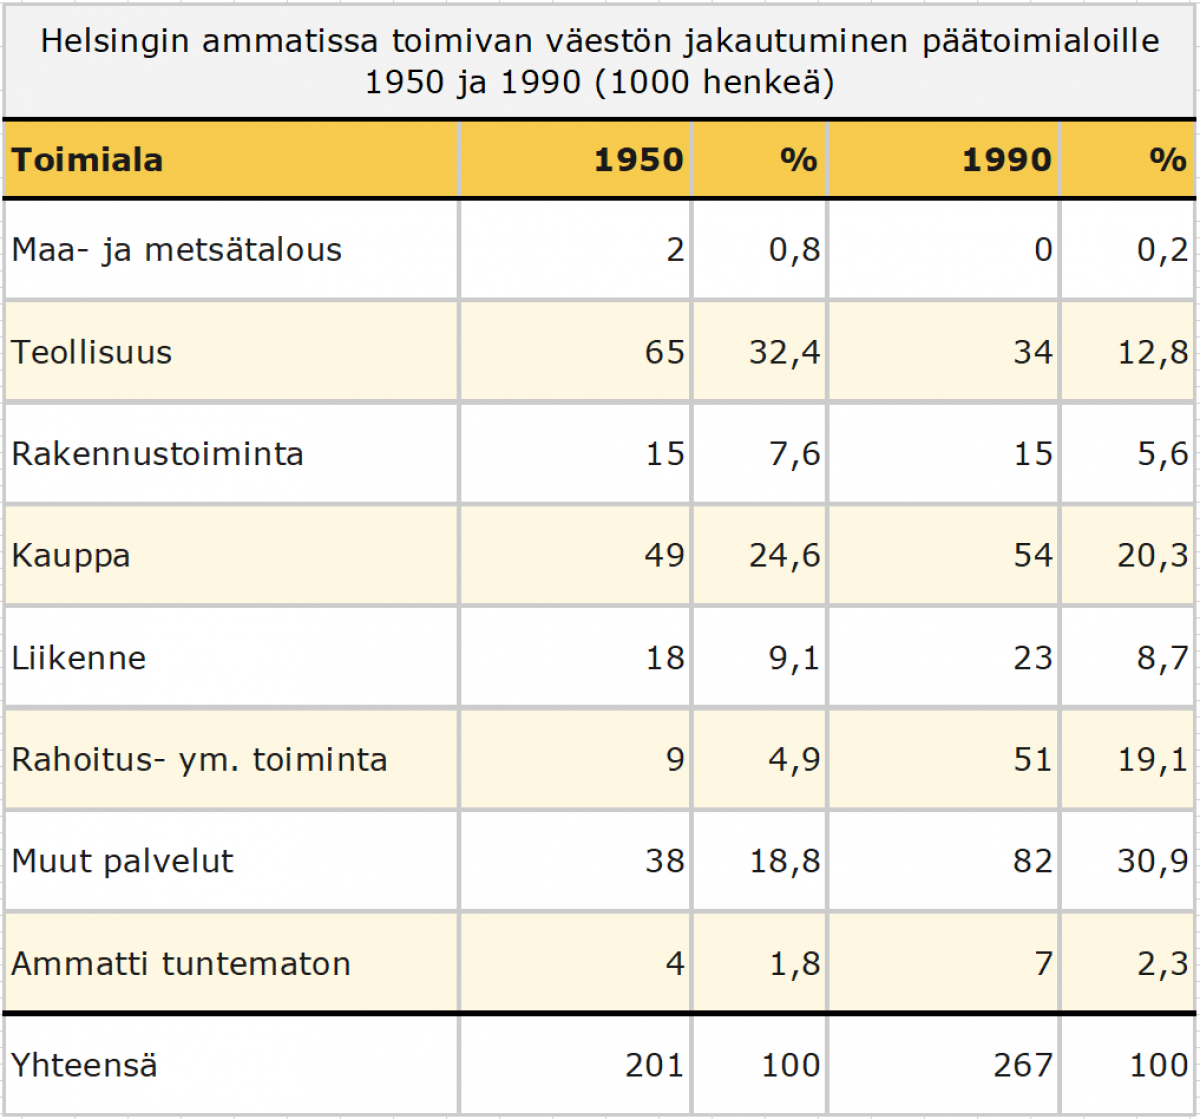 Taulukko joka kuvaa Helsingin ammatissa toimivan väestön jakautumista eri toimialoille vuosina 1950 ja 1990